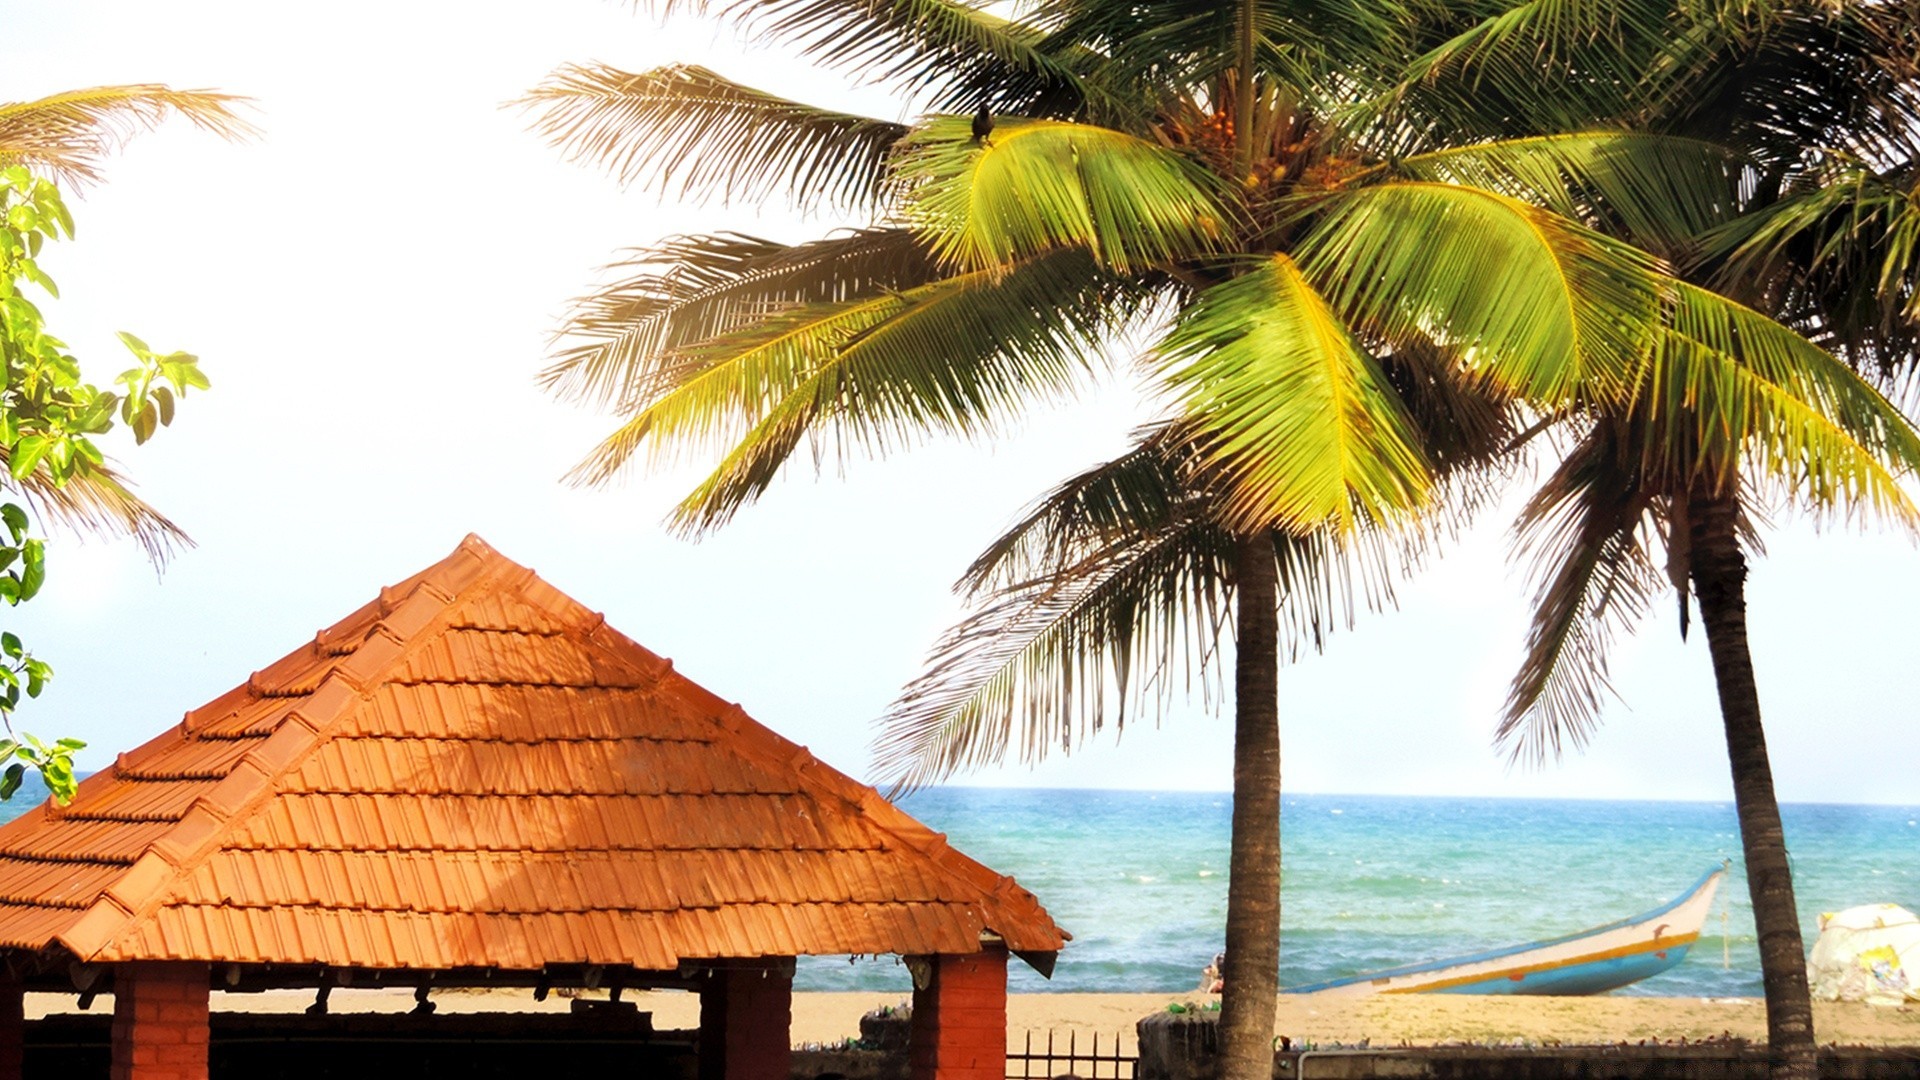 море и океан ладони тропический пляж курорт экзотические рай отпуск песок остров лето моря кокосовое релаксация идиллия солнце океан путешествия избушка отель